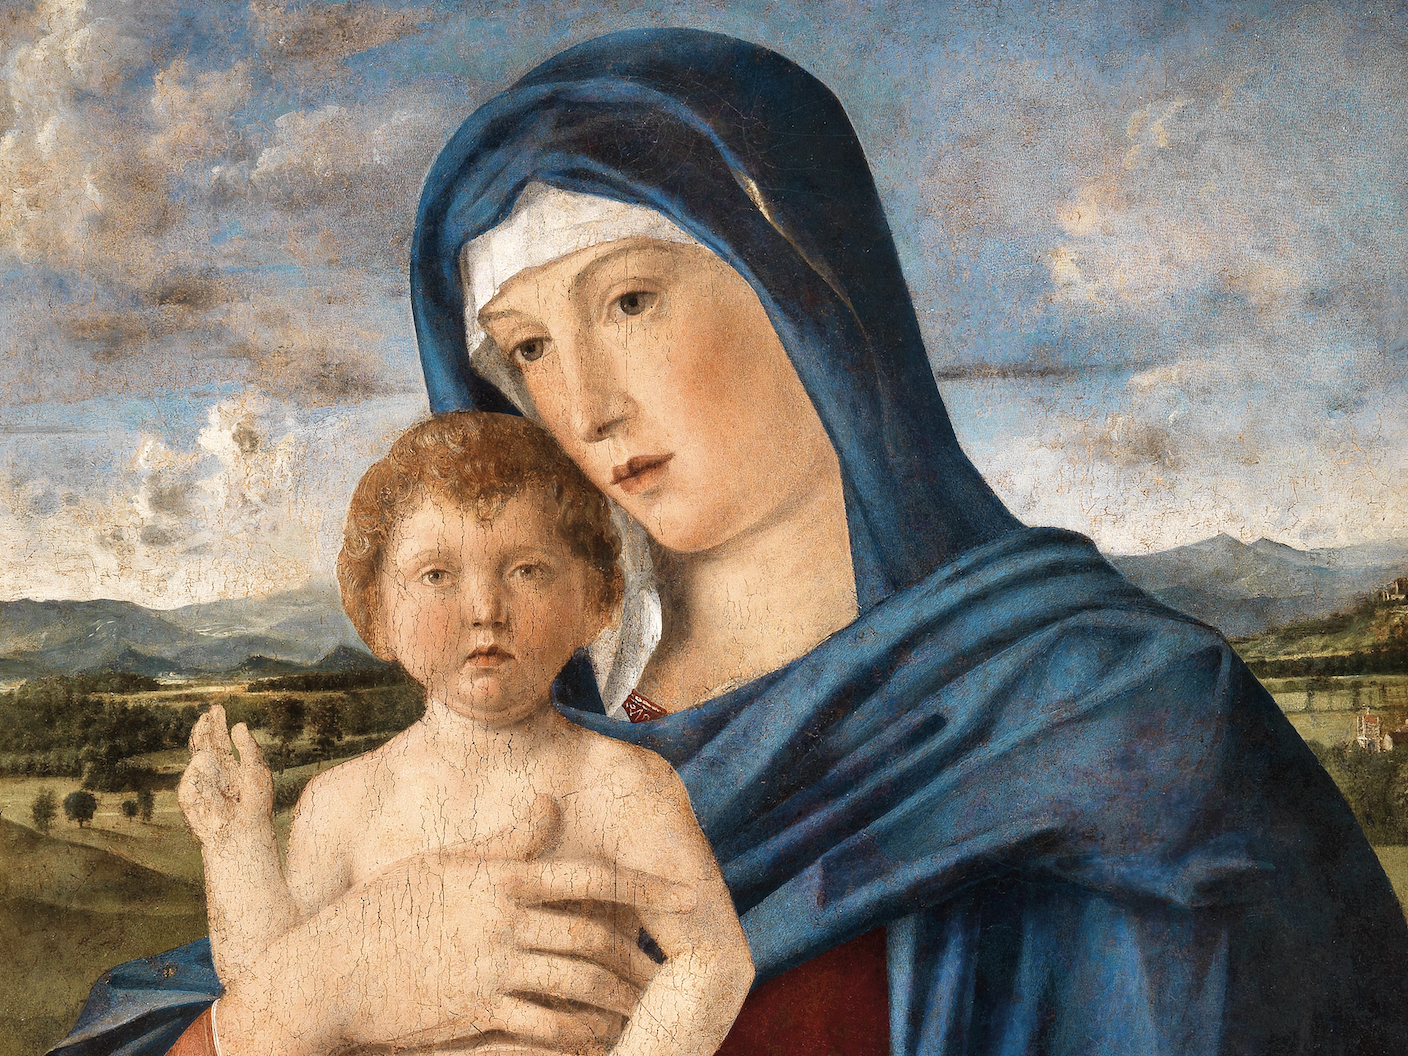 Dorotheum: 1,4 milioni di euro per la Madonna di Bellini (e assistente)